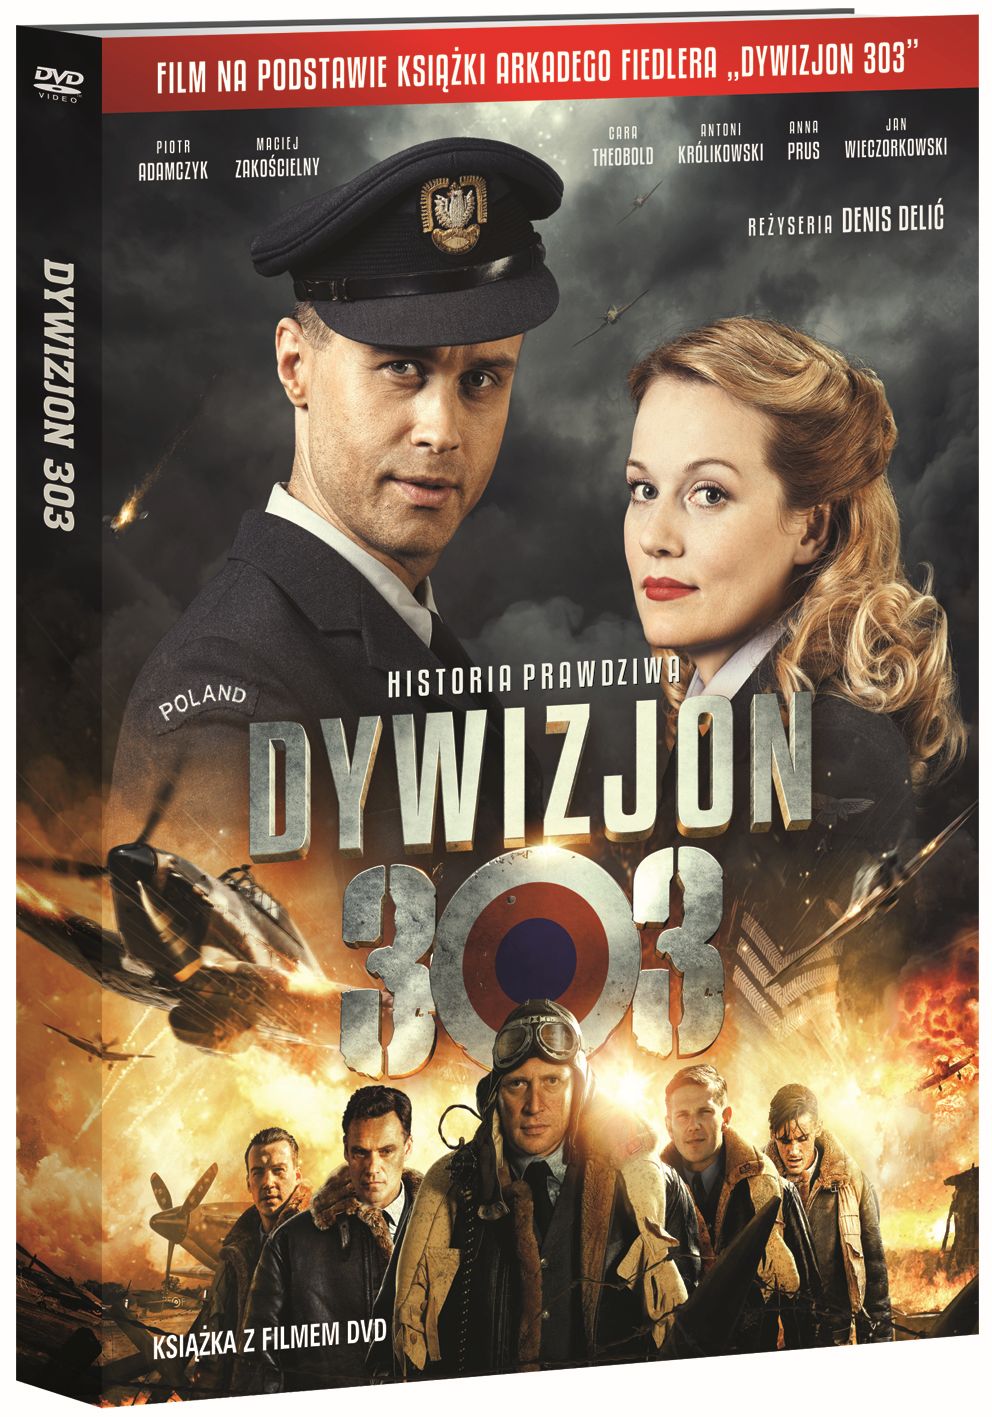 Squadron 303 / Dywizjon 303: Historia prawdziwa booklet + DVD